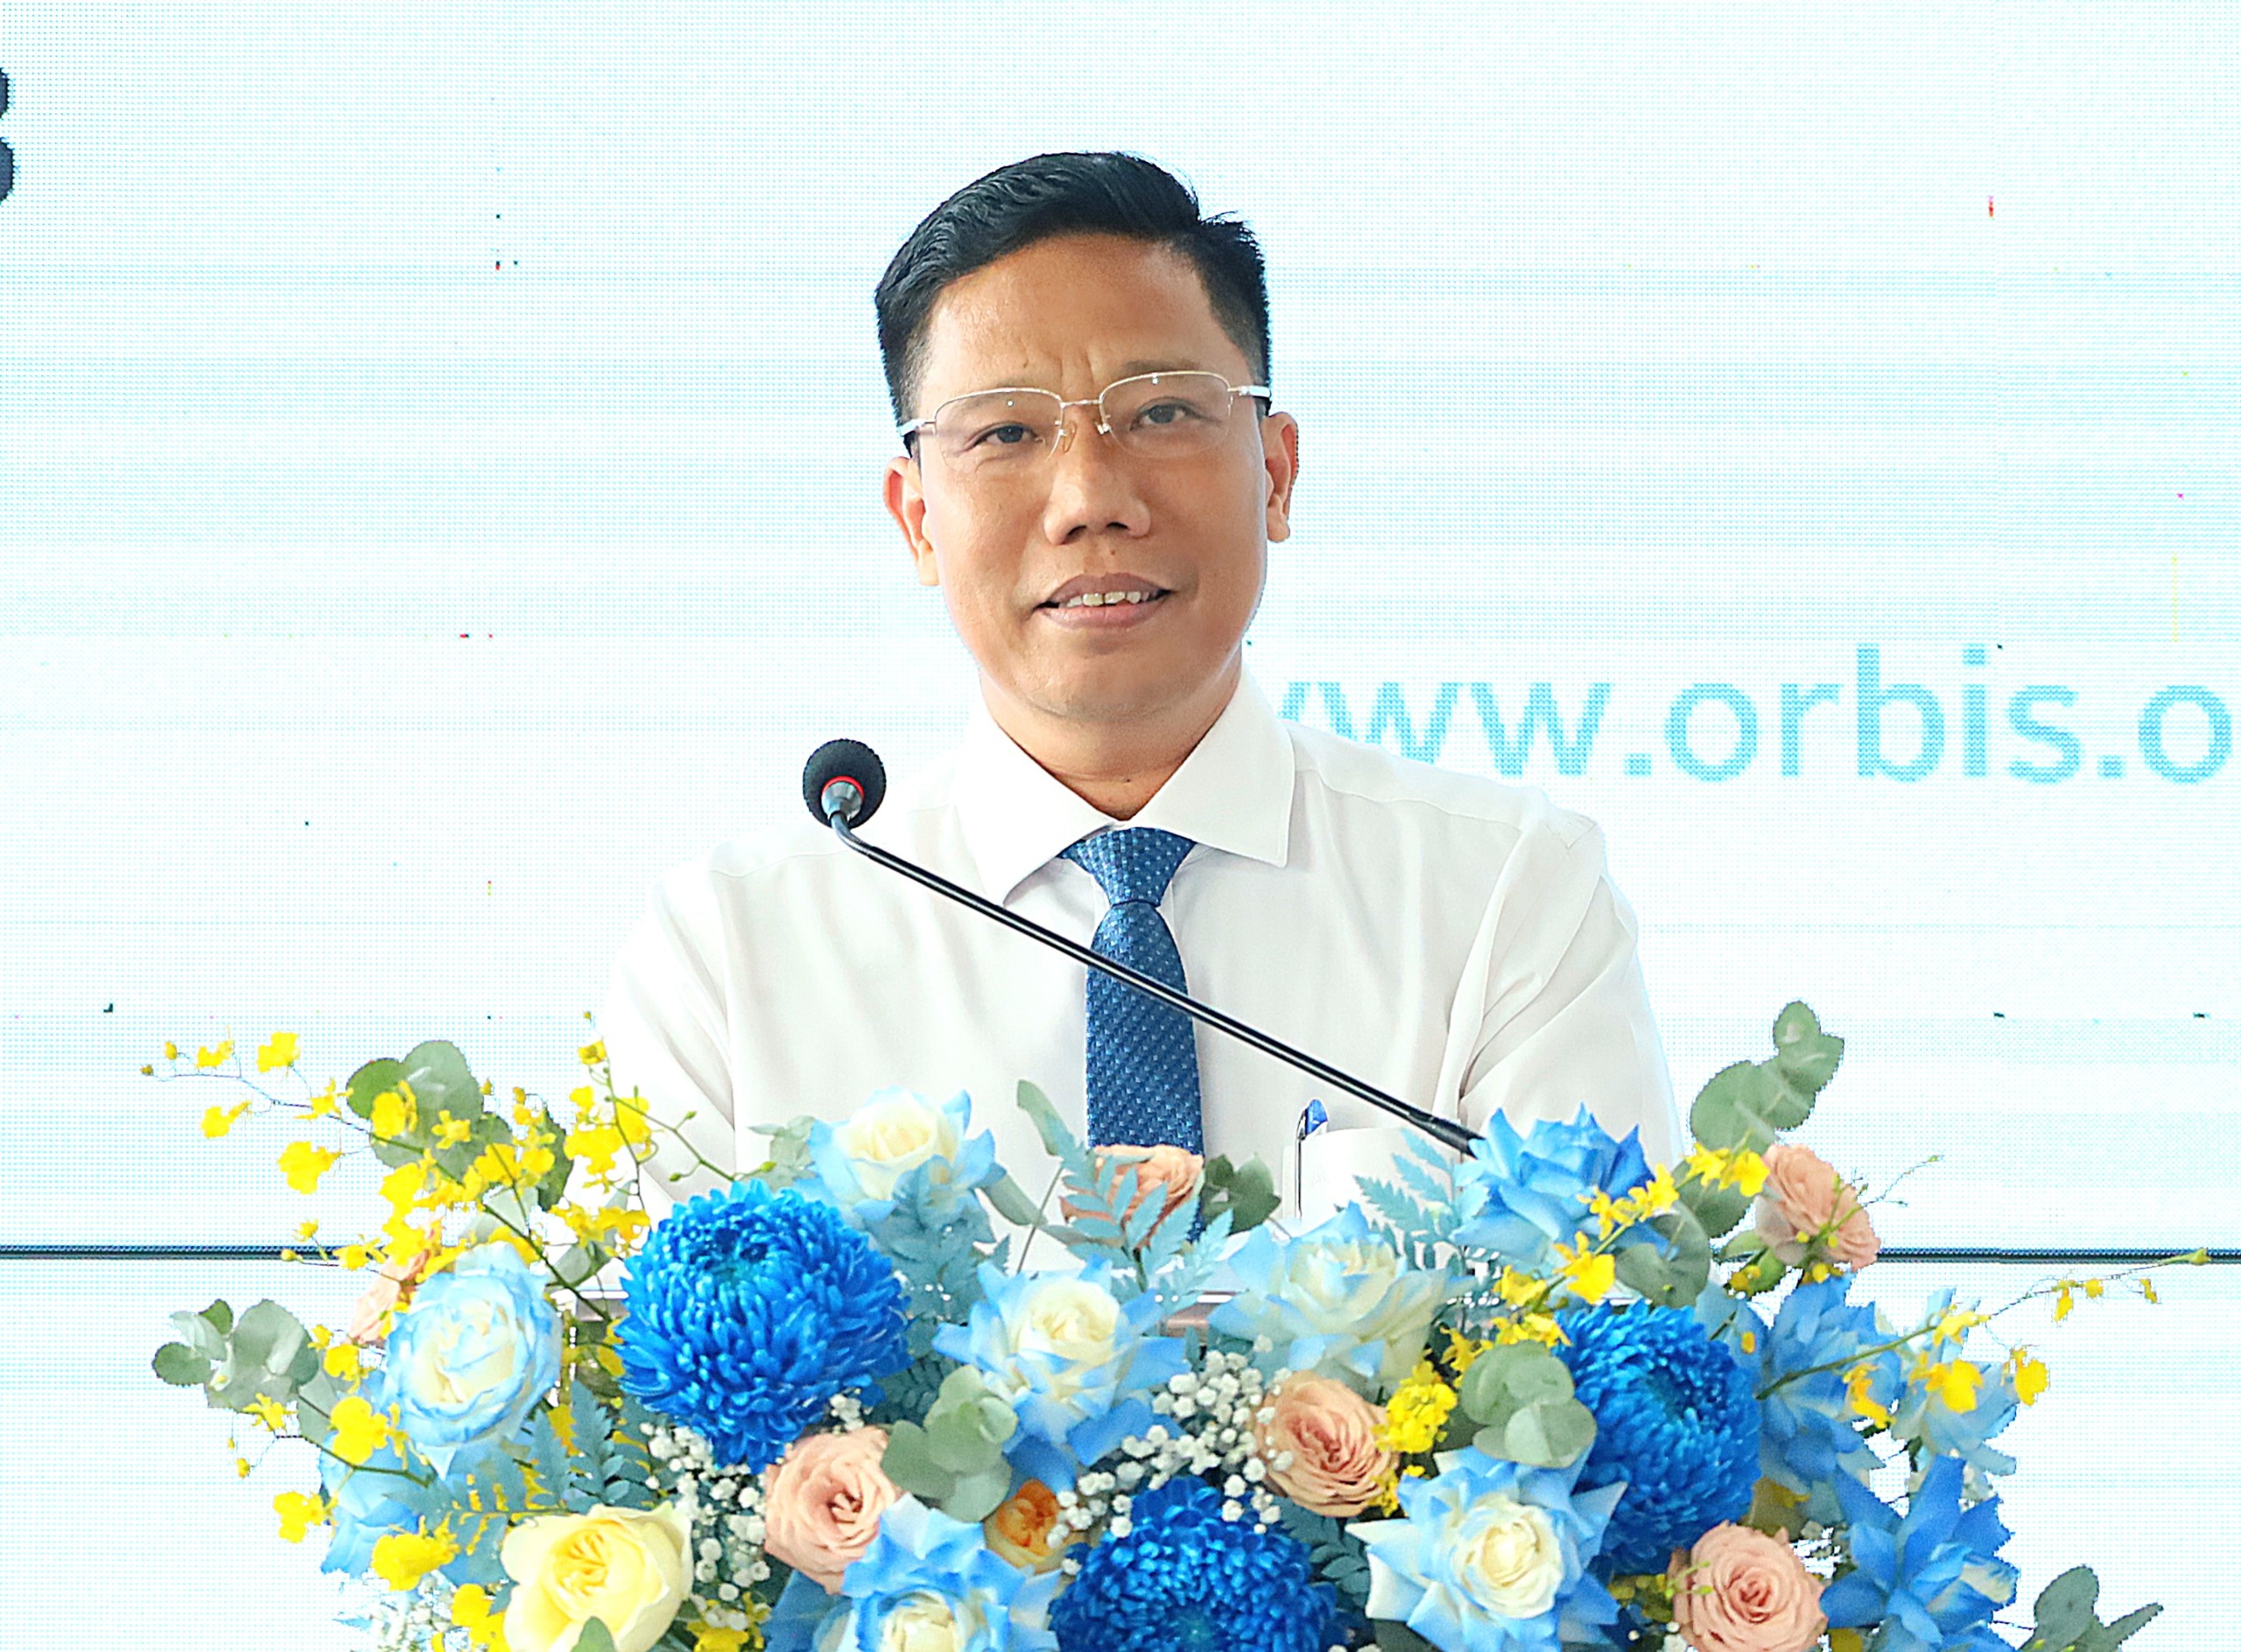 Ông Nguyễn Thực Hiện – Phó Chủ tịch UBND TP. Cần Thơ phát biểu tại chương trình.